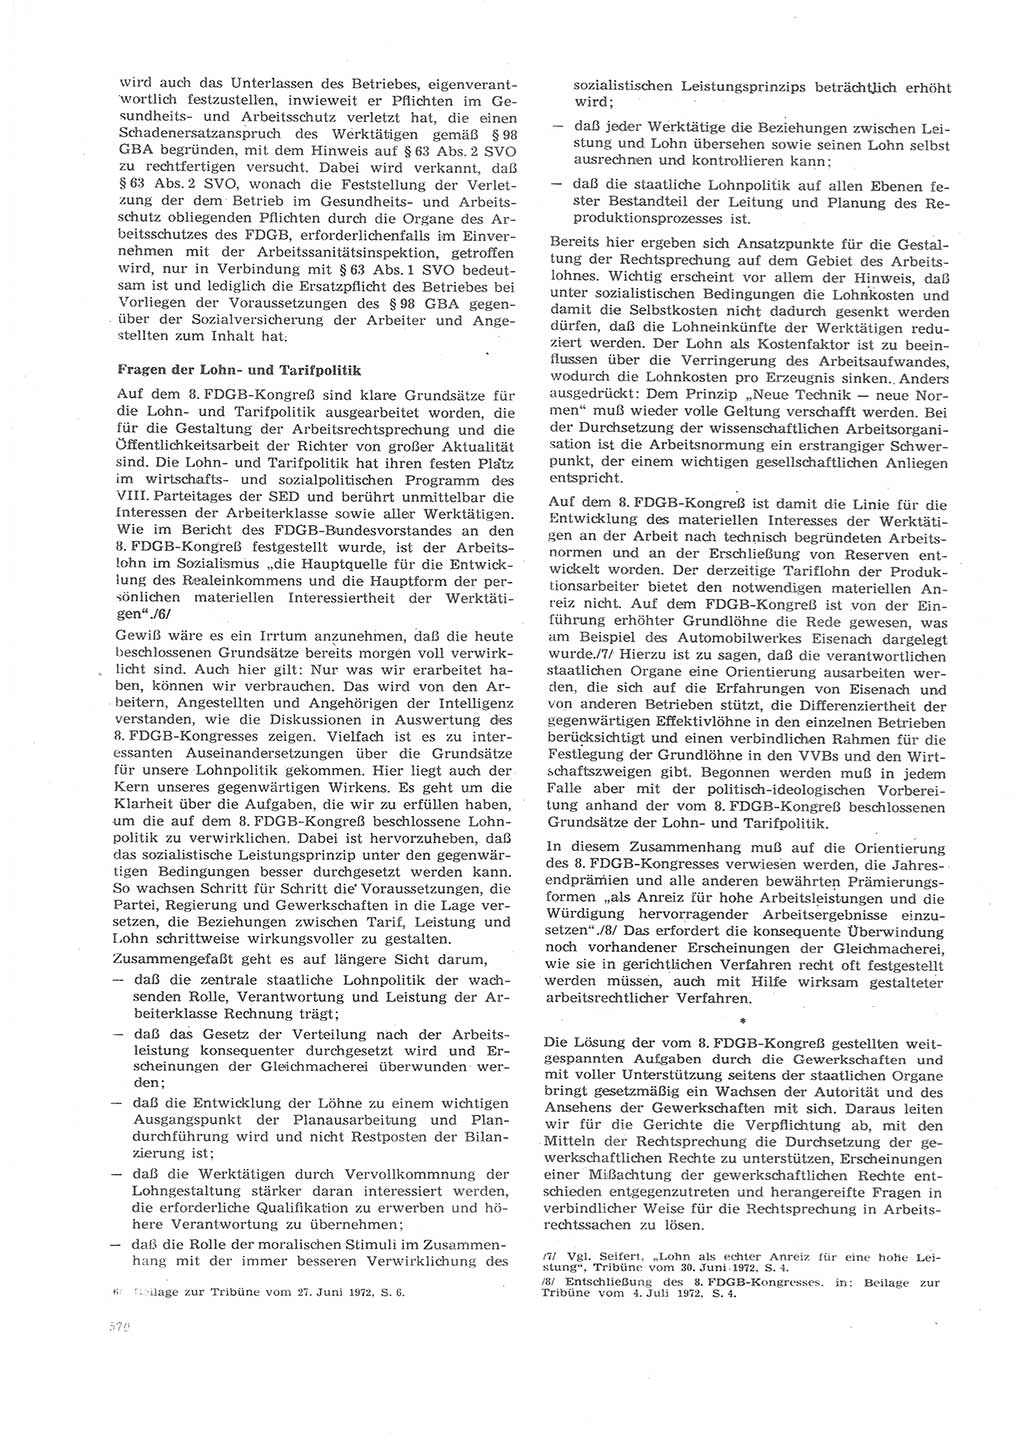 Neue Justiz (NJ), Zeitschrift für Recht und Rechtswissenschaft [Deutsche Demokratische Republik (DDR)], 26. Jahrgang 1972, Seite 570 (NJ DDR 1972, S. 570)